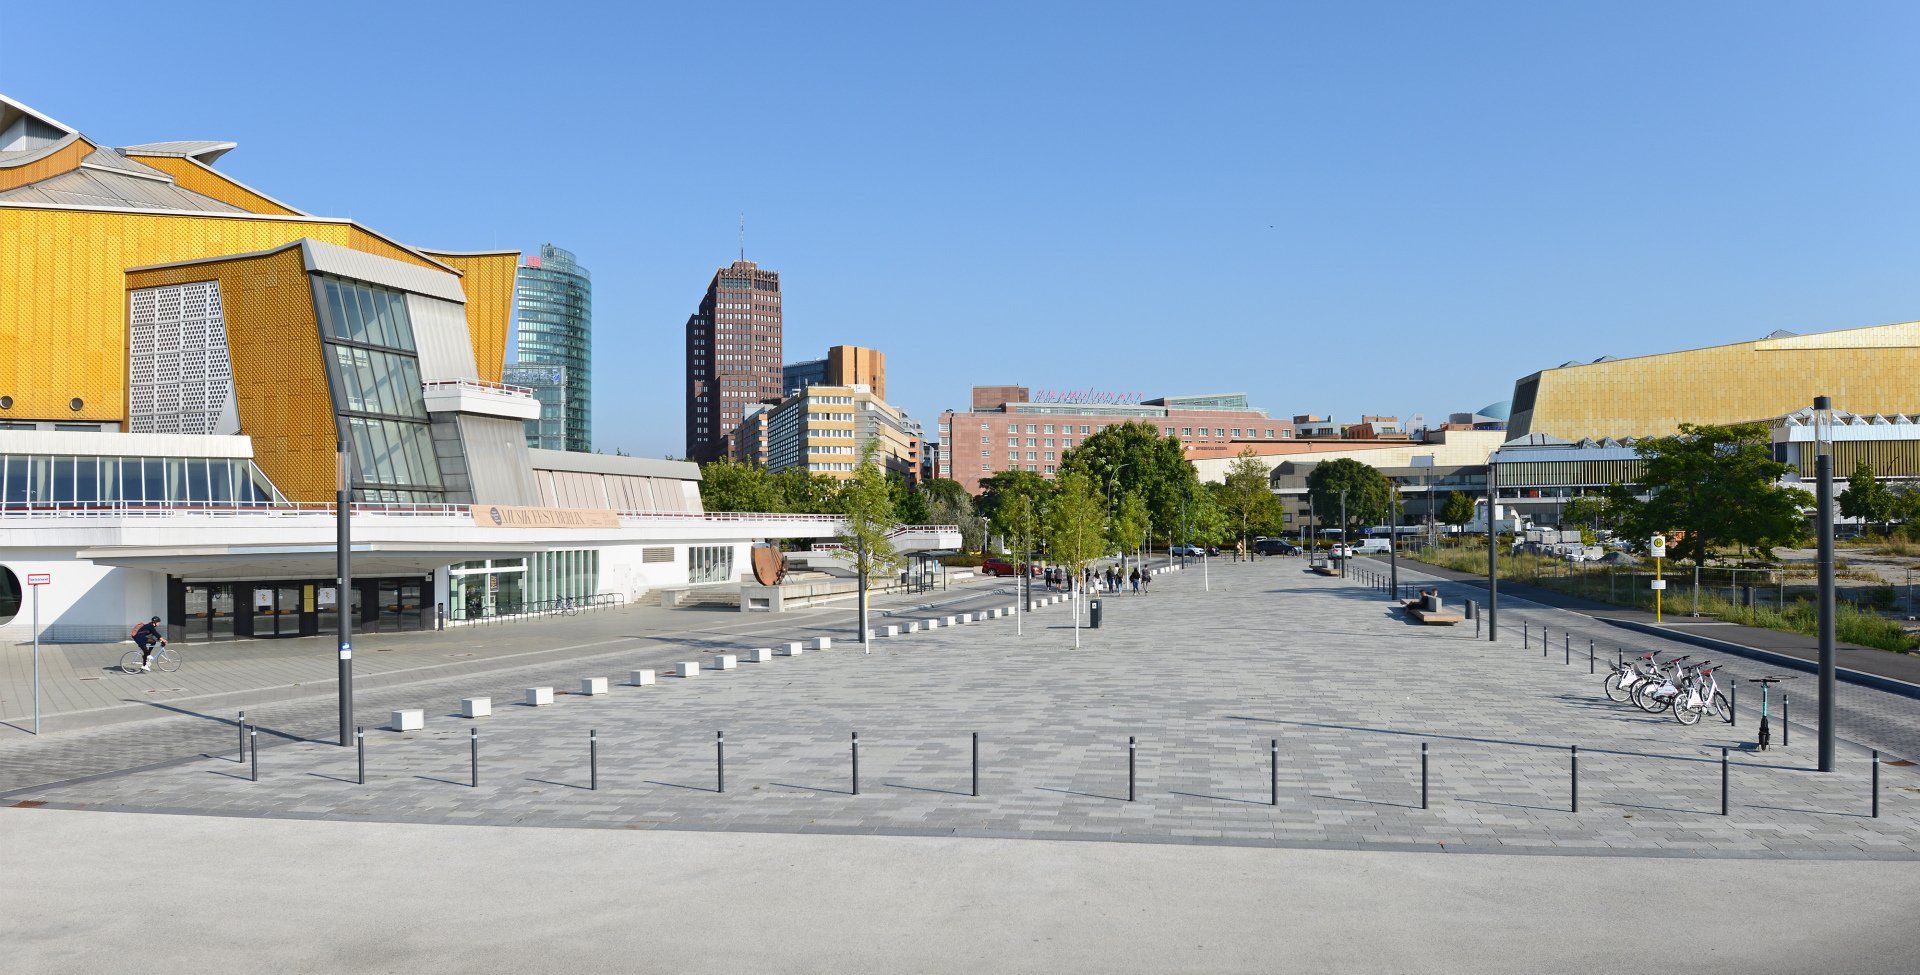 Foto: Blick von der Piazzetta auf den Scharounplatz, September 2020